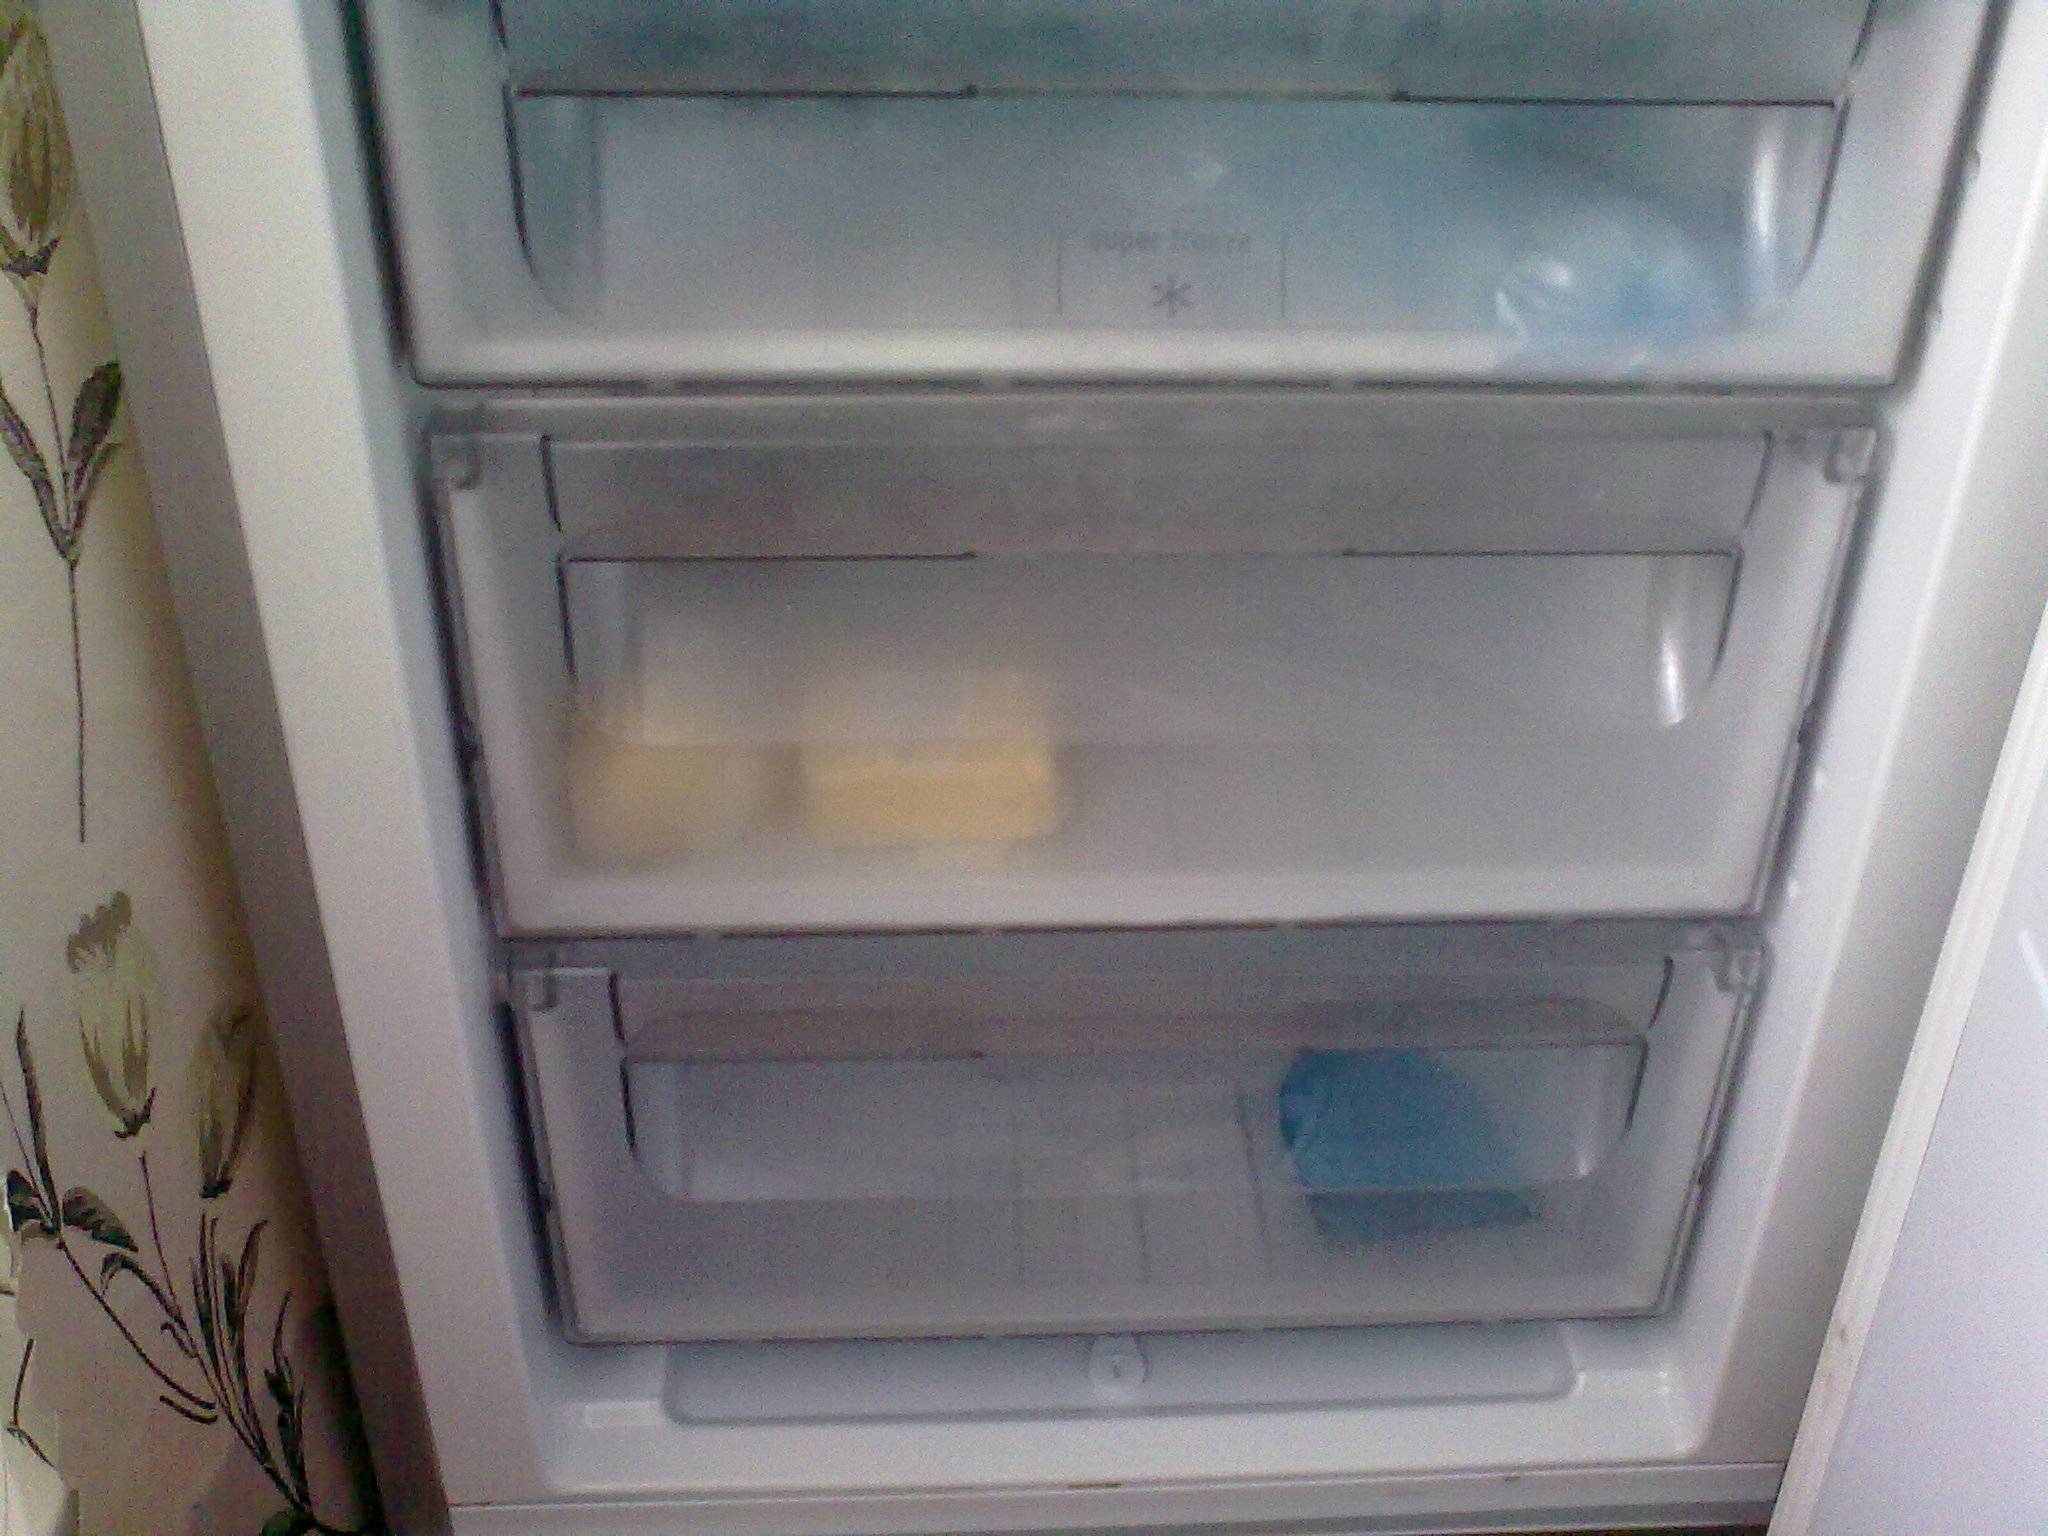 Не работает холодильник, а морозилка работает